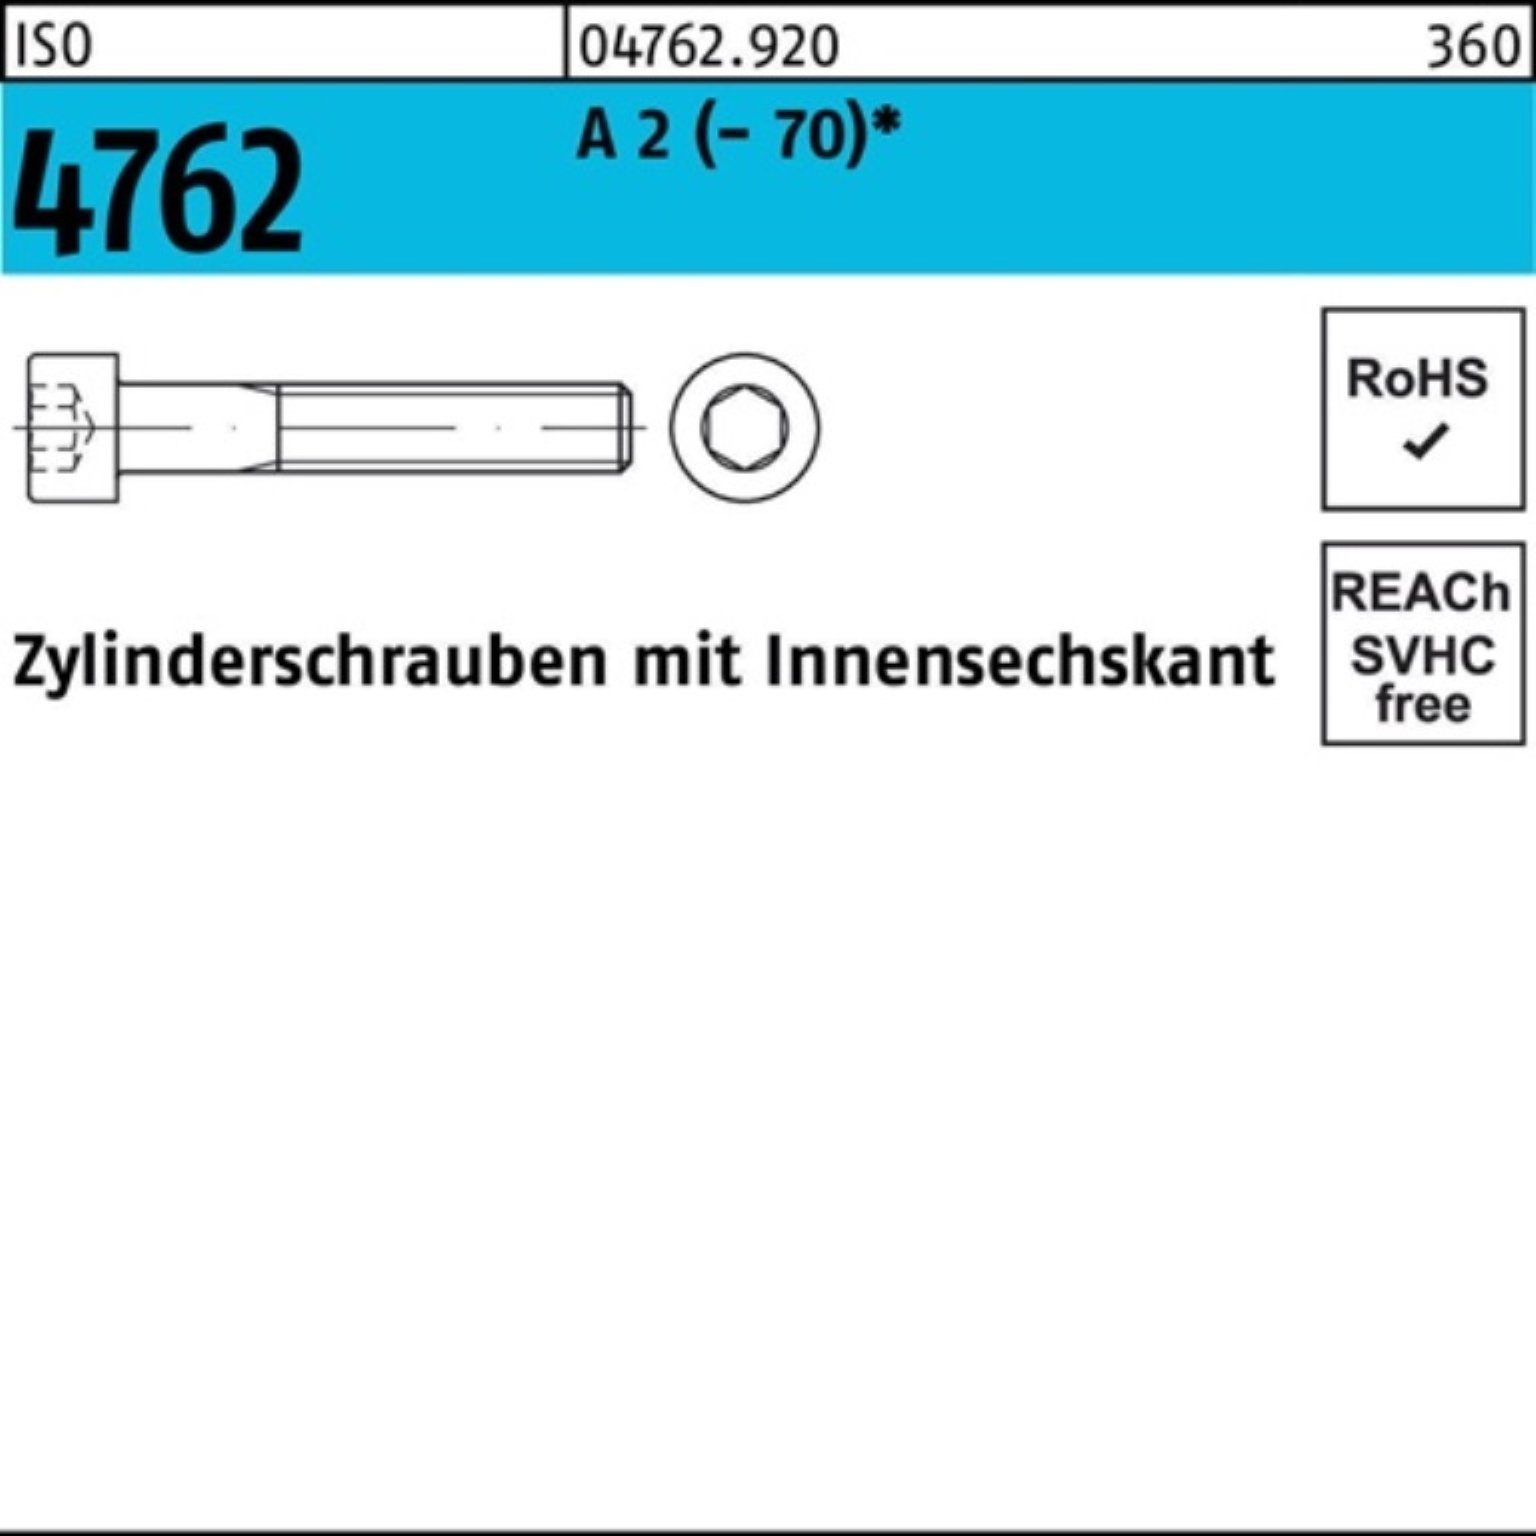 ISO Pack Reyher Innen-6kt 200er A Zylinderschraube 4762 200 12 Zylinderschraube M8x S 2 (70)